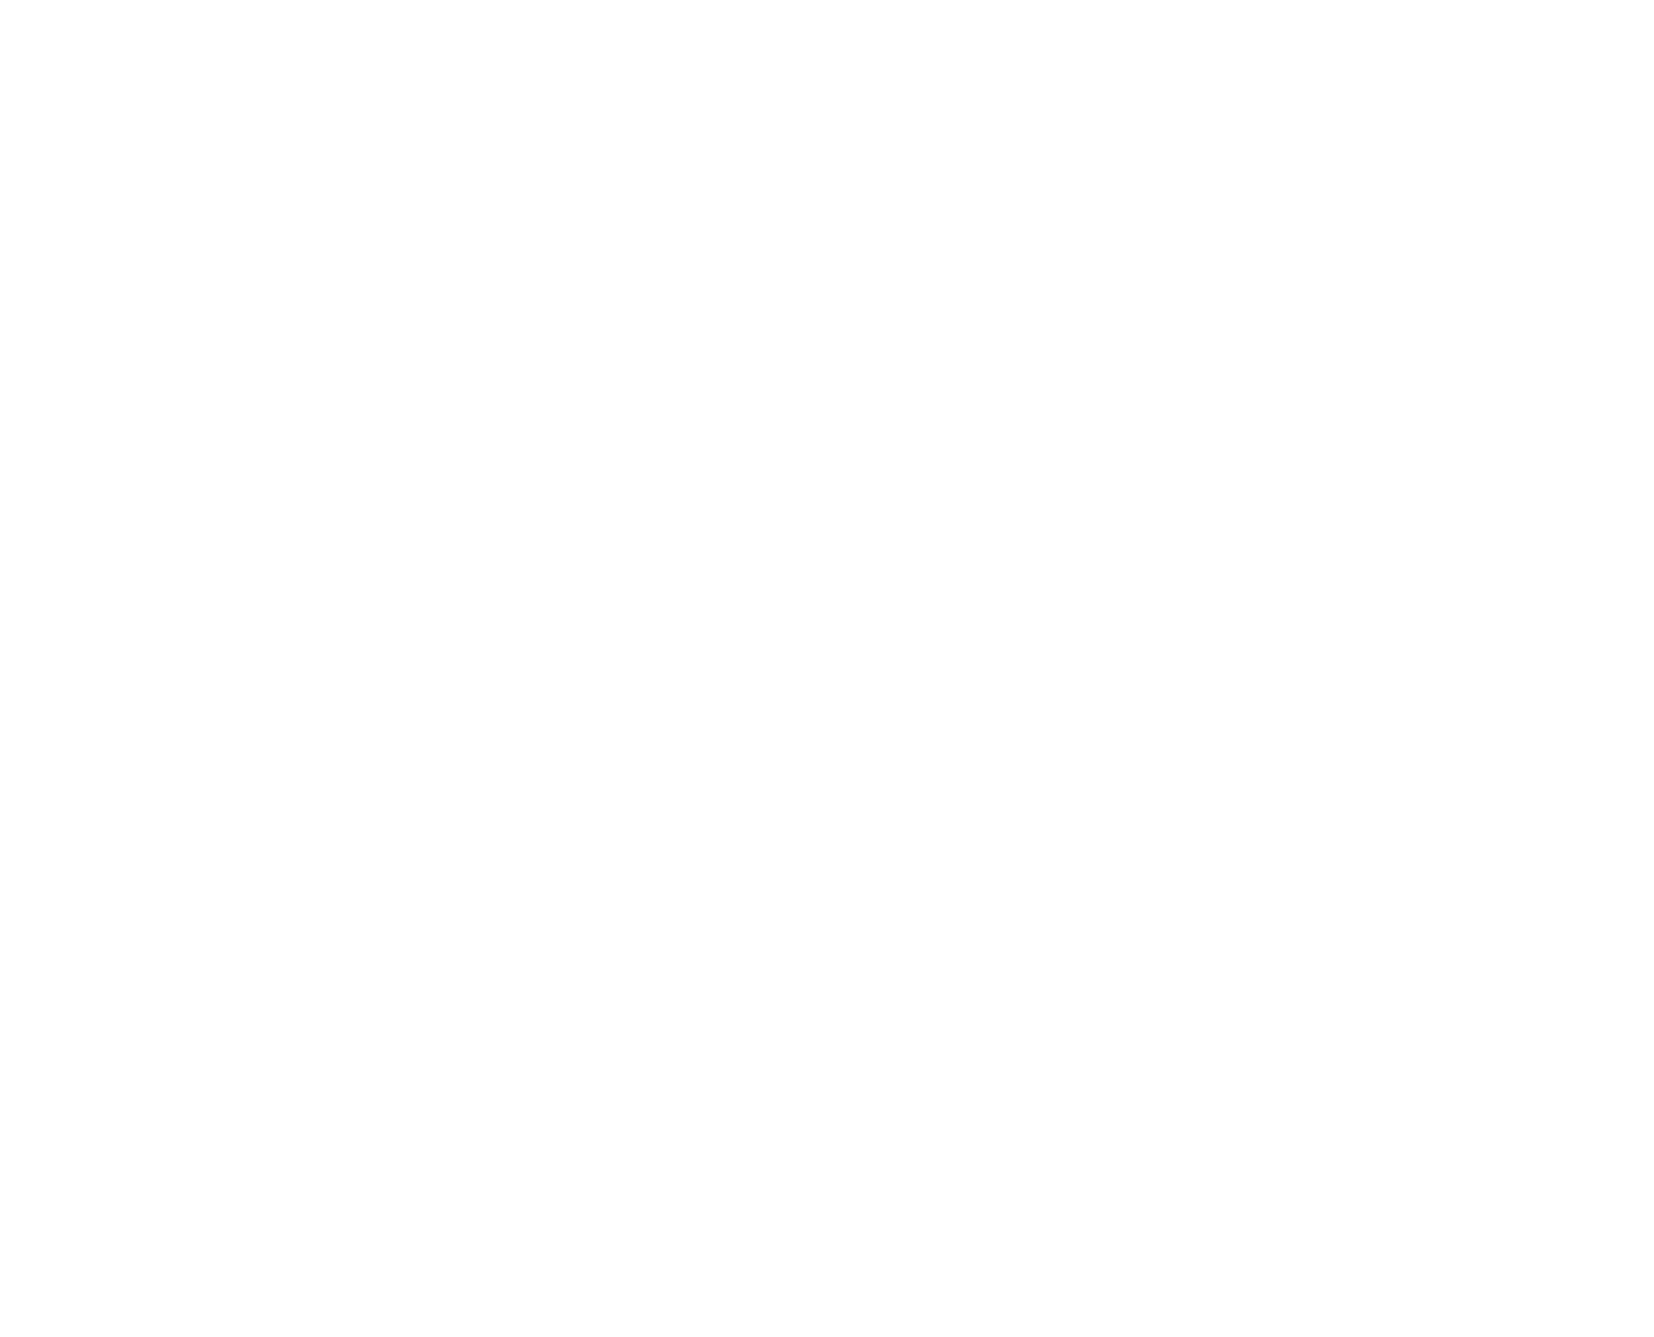 Blattschneiderameise, Acryl auf Leinwand, 50 x 60 cm